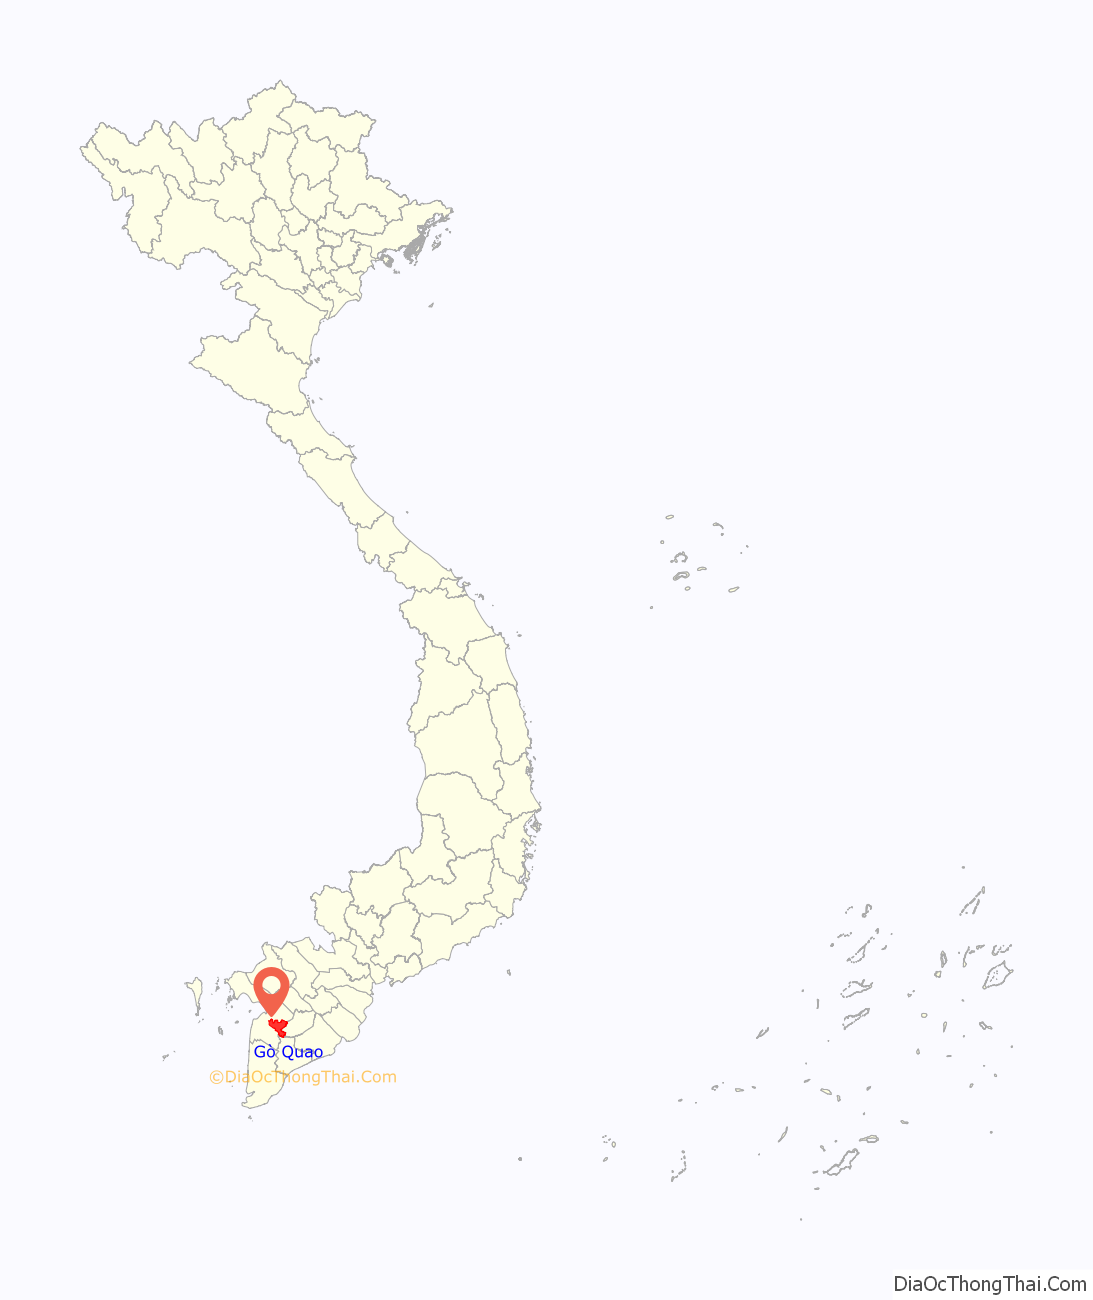 Huyện Gò Quao ở đâu? Vị trí của huyện Gò Quao